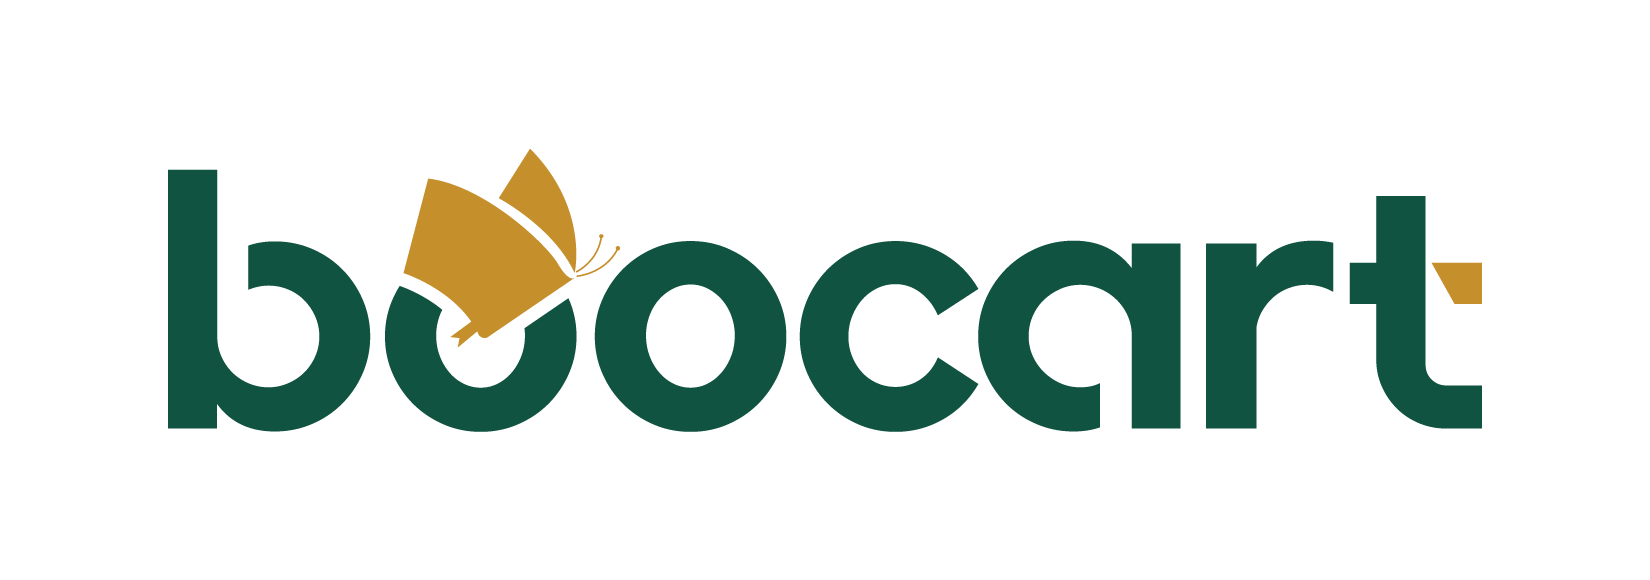 boocart -03